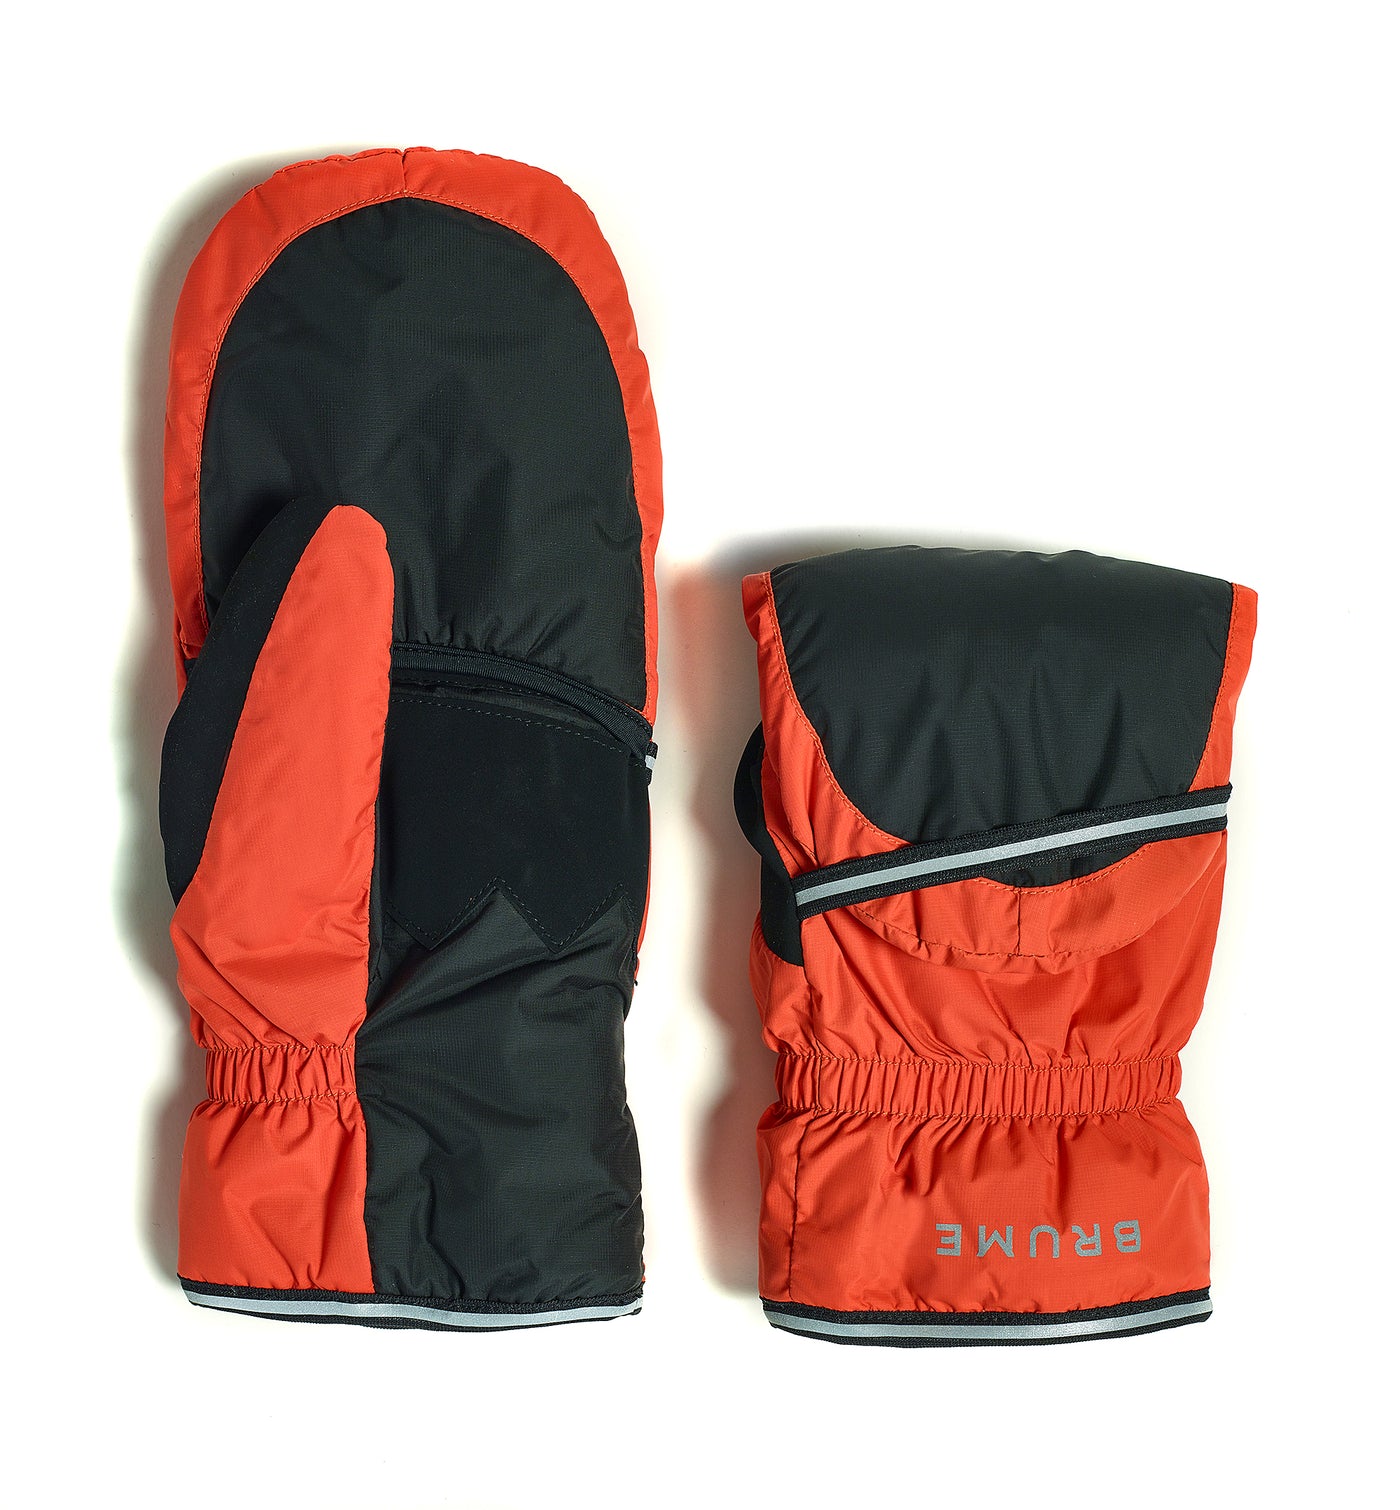 Mens Convertible Mittens  Convertible Mitten Gloves for Men - TrailHeads